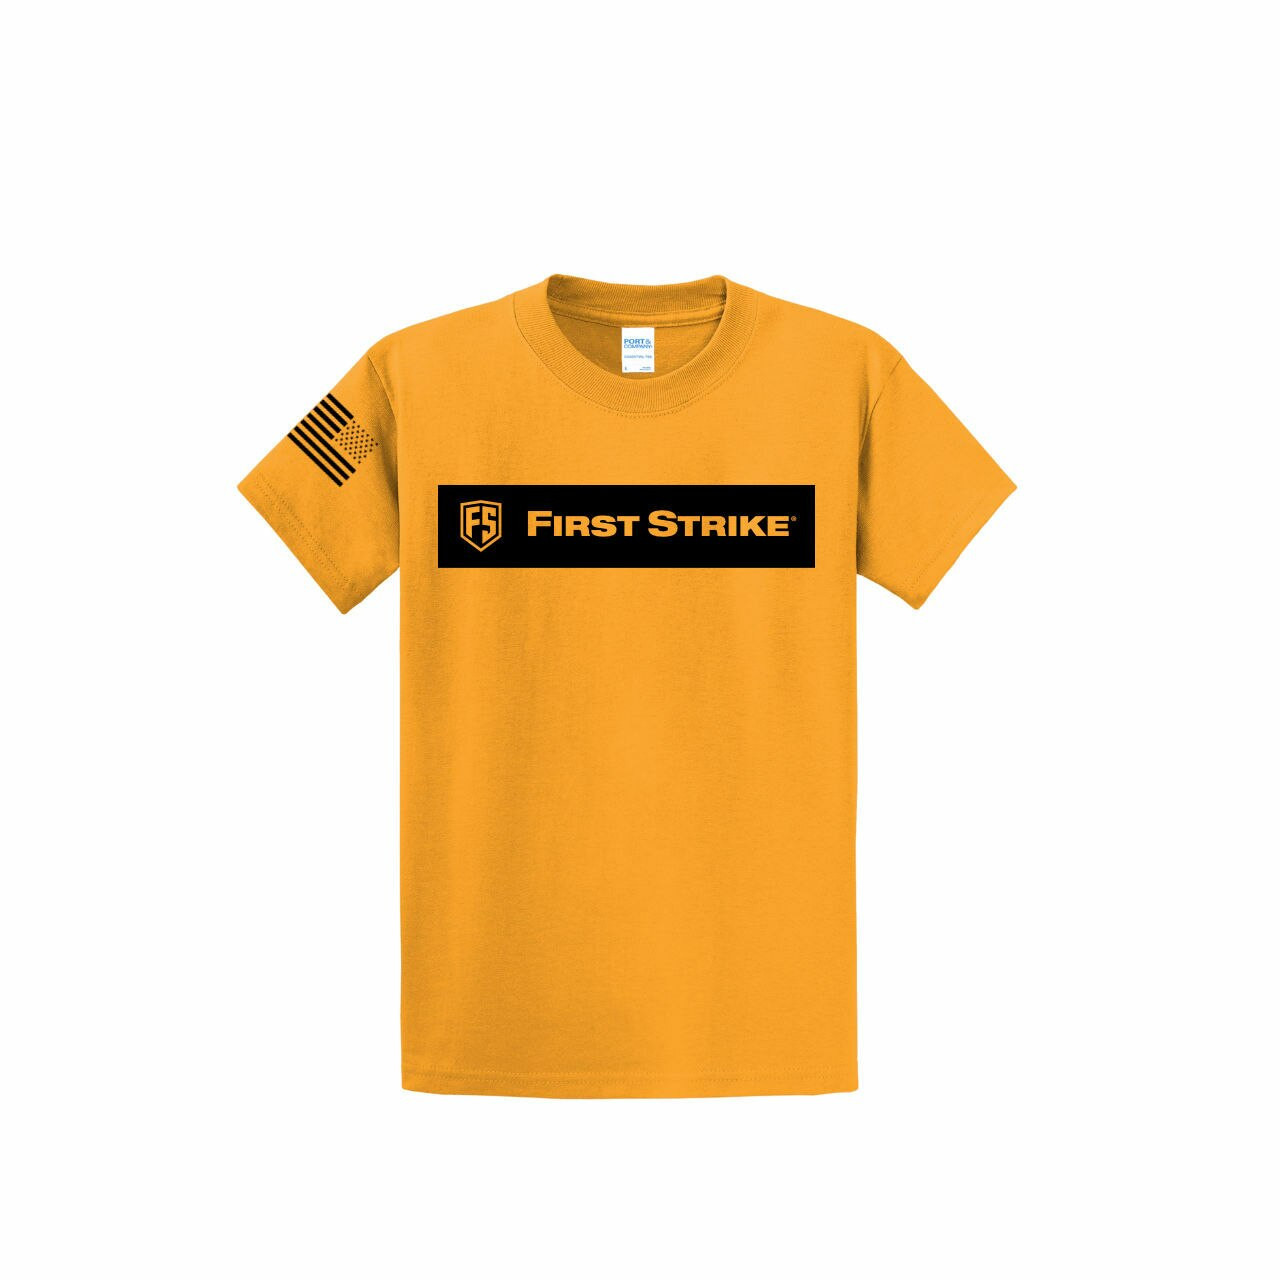 First Strike - T-Shirt - Gold